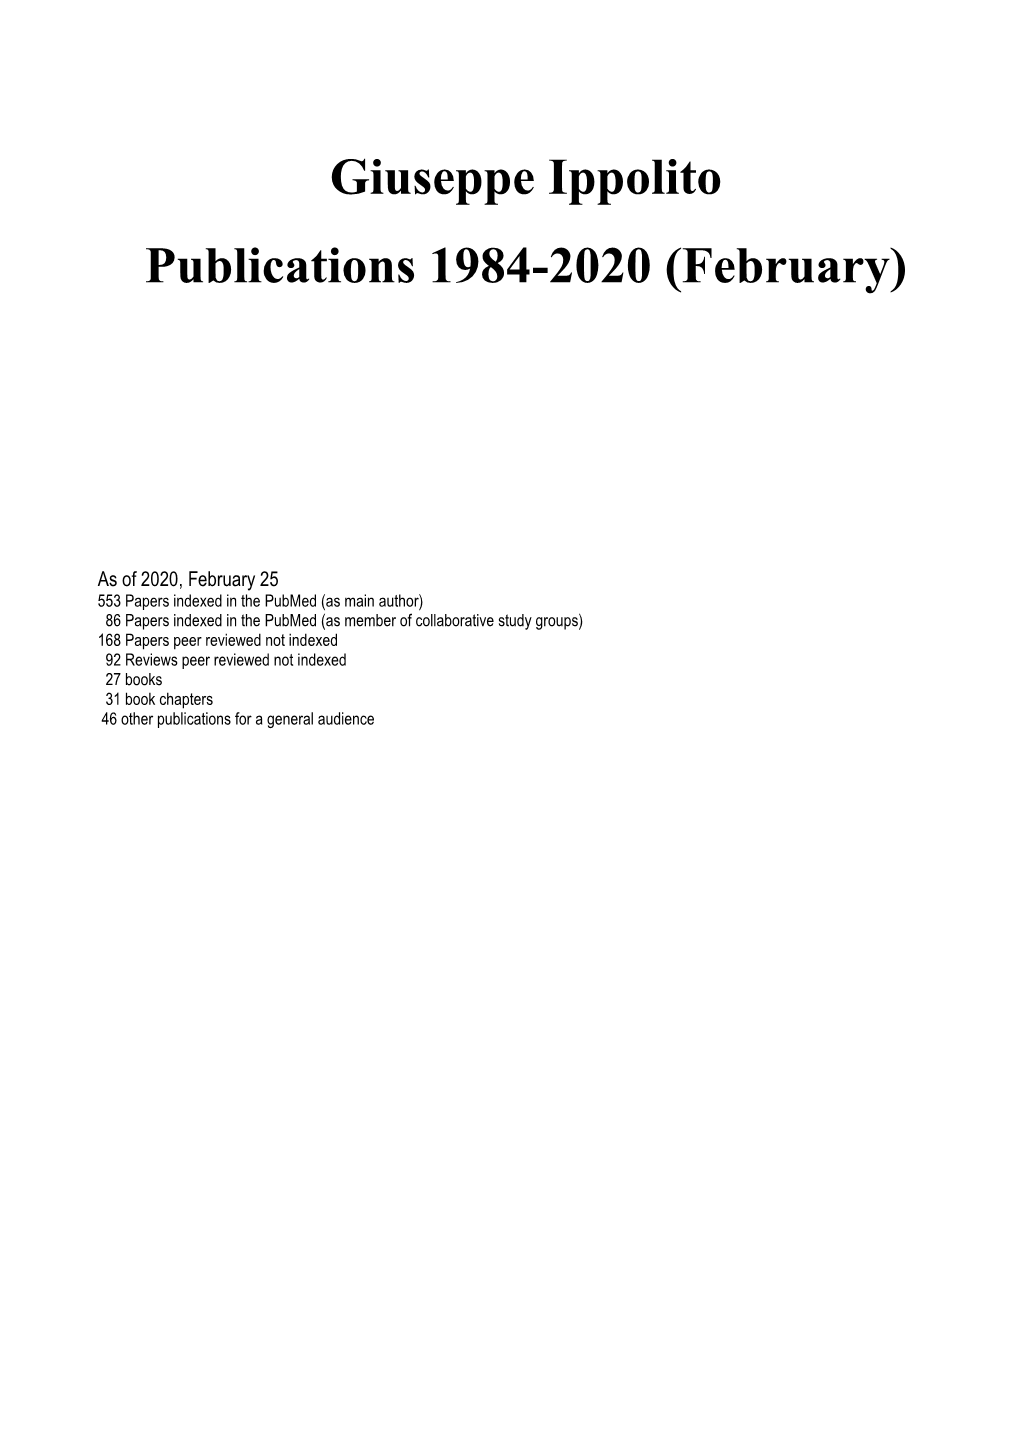 Giuseppe Ippolito Publications 1984-2020 (February)